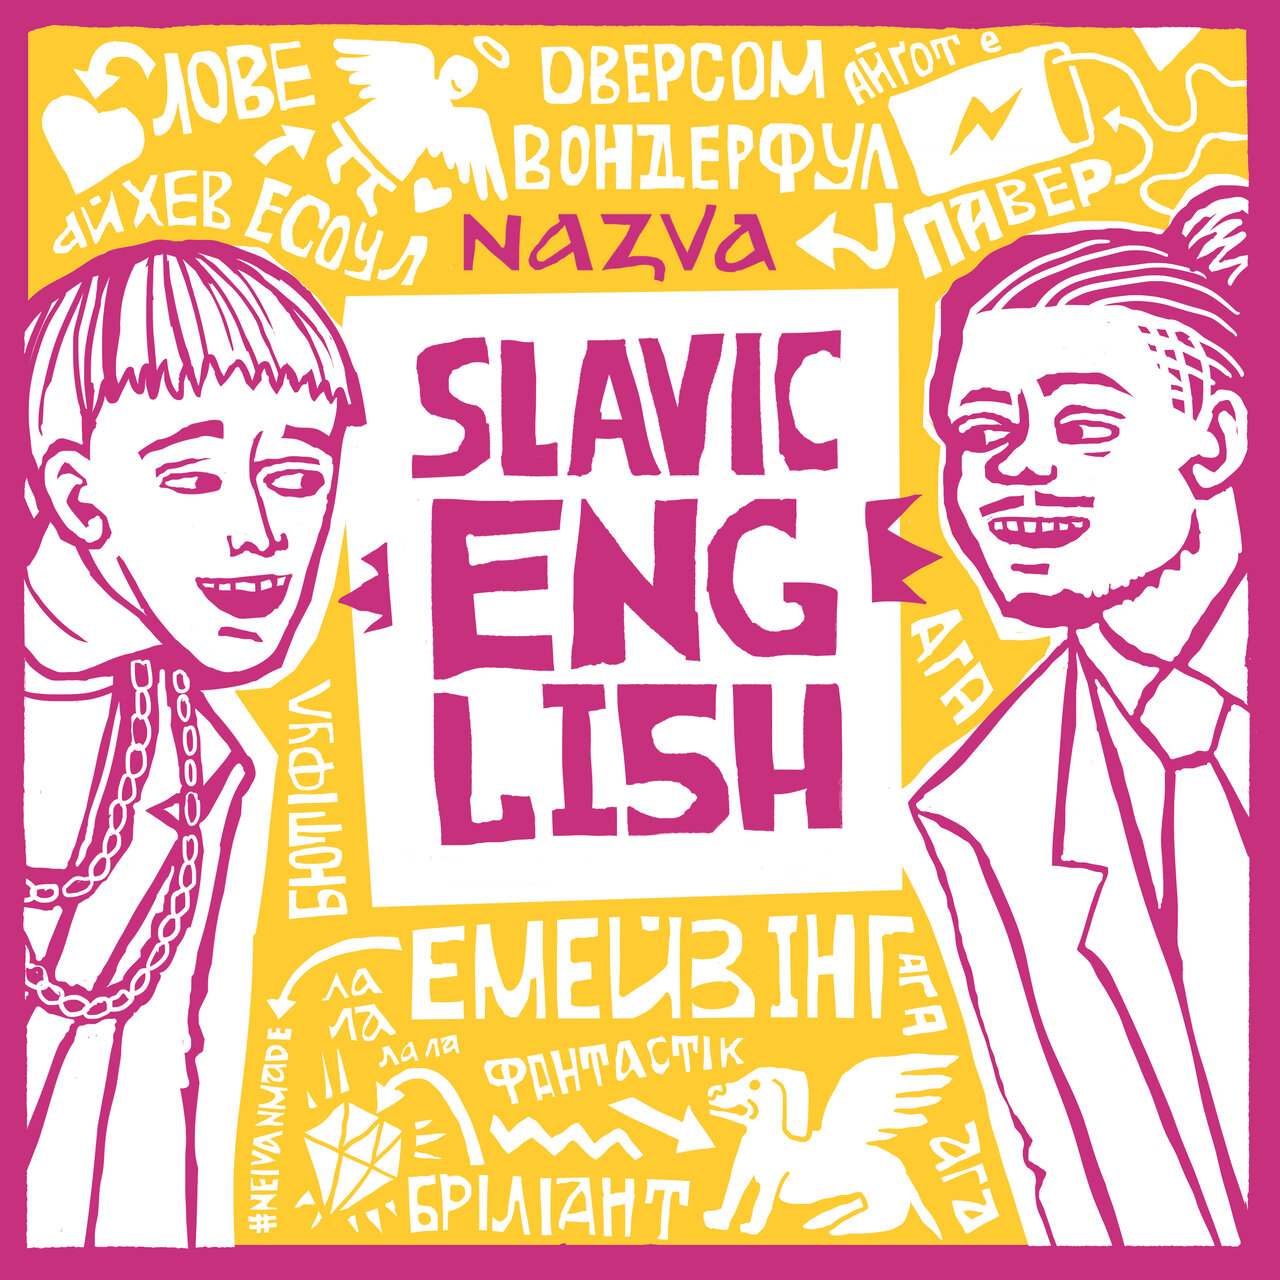 NAZVA SLAVIC ENGLISH cover artwork